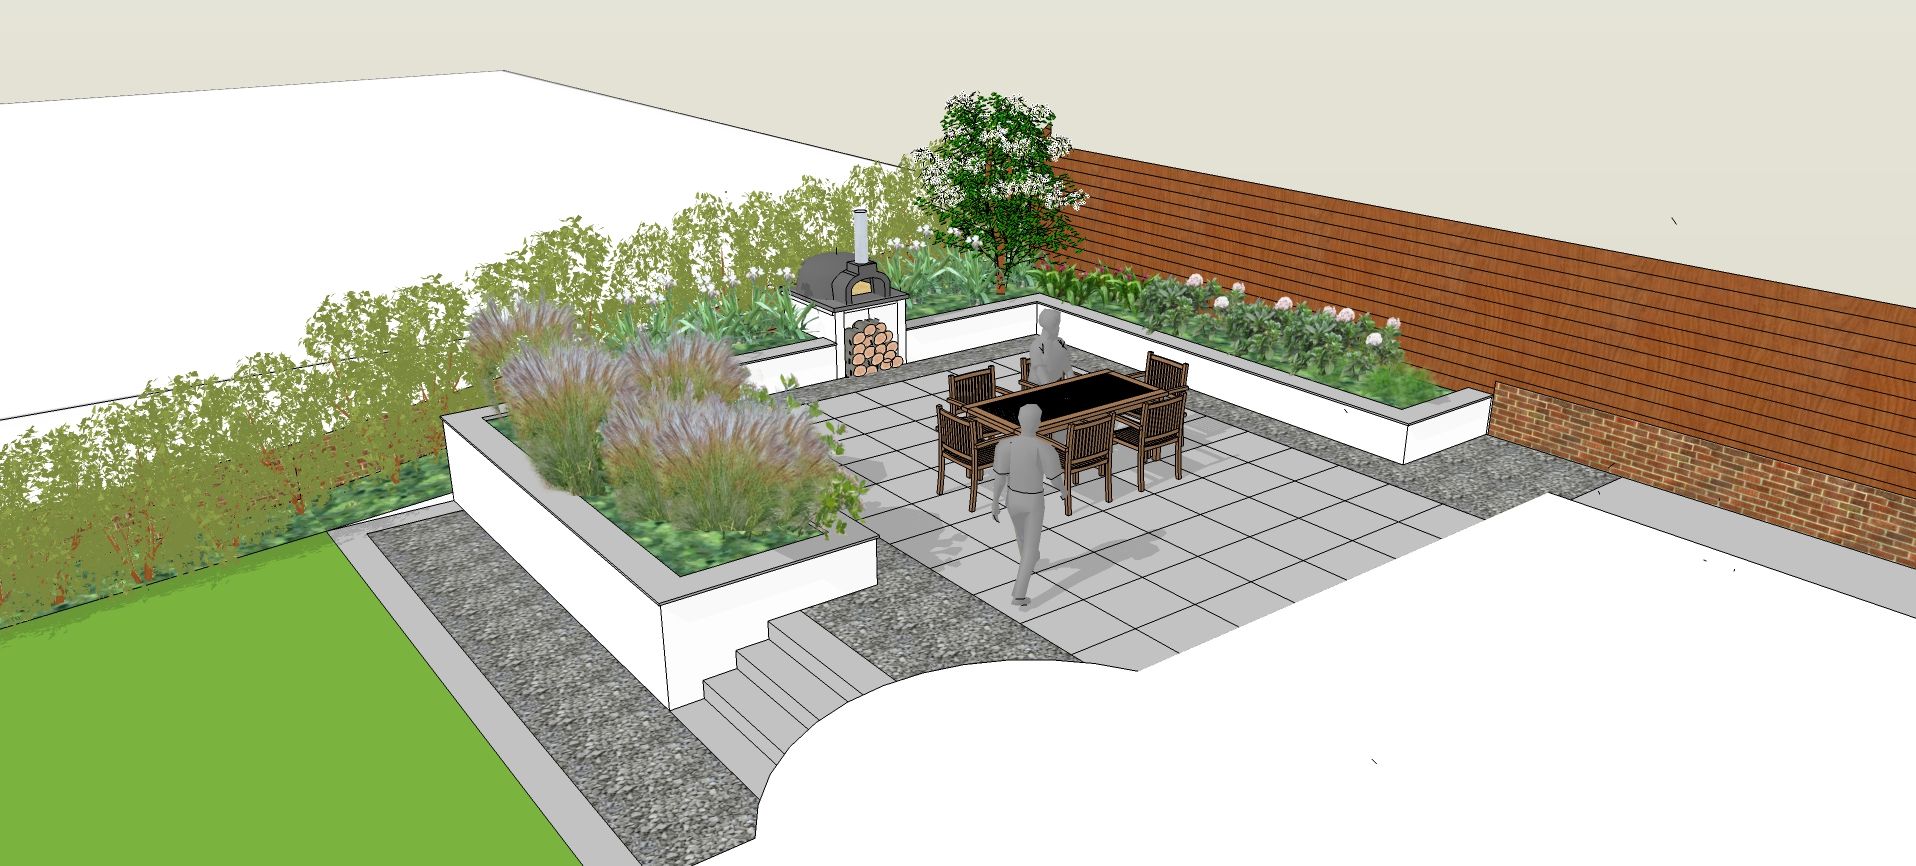 How to Design a Garden Border in SketchUp